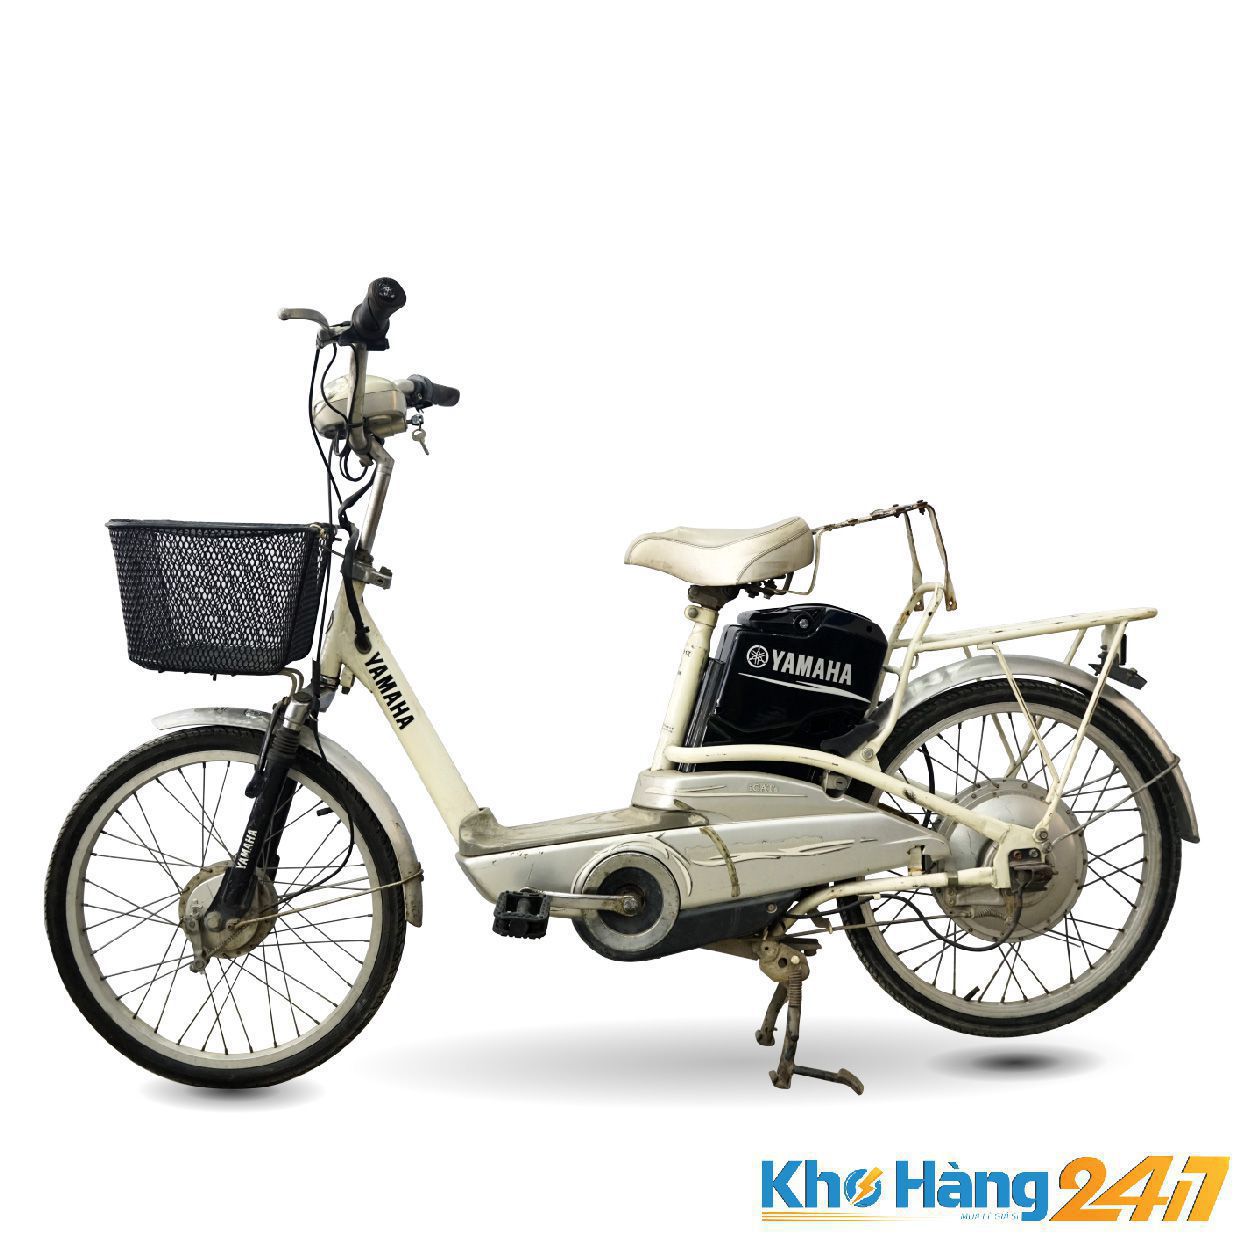 XE DAP DIEN YAMAHA ICATs 01 1 - Có nên mua xe đạp điện cũ giá rẻ không?